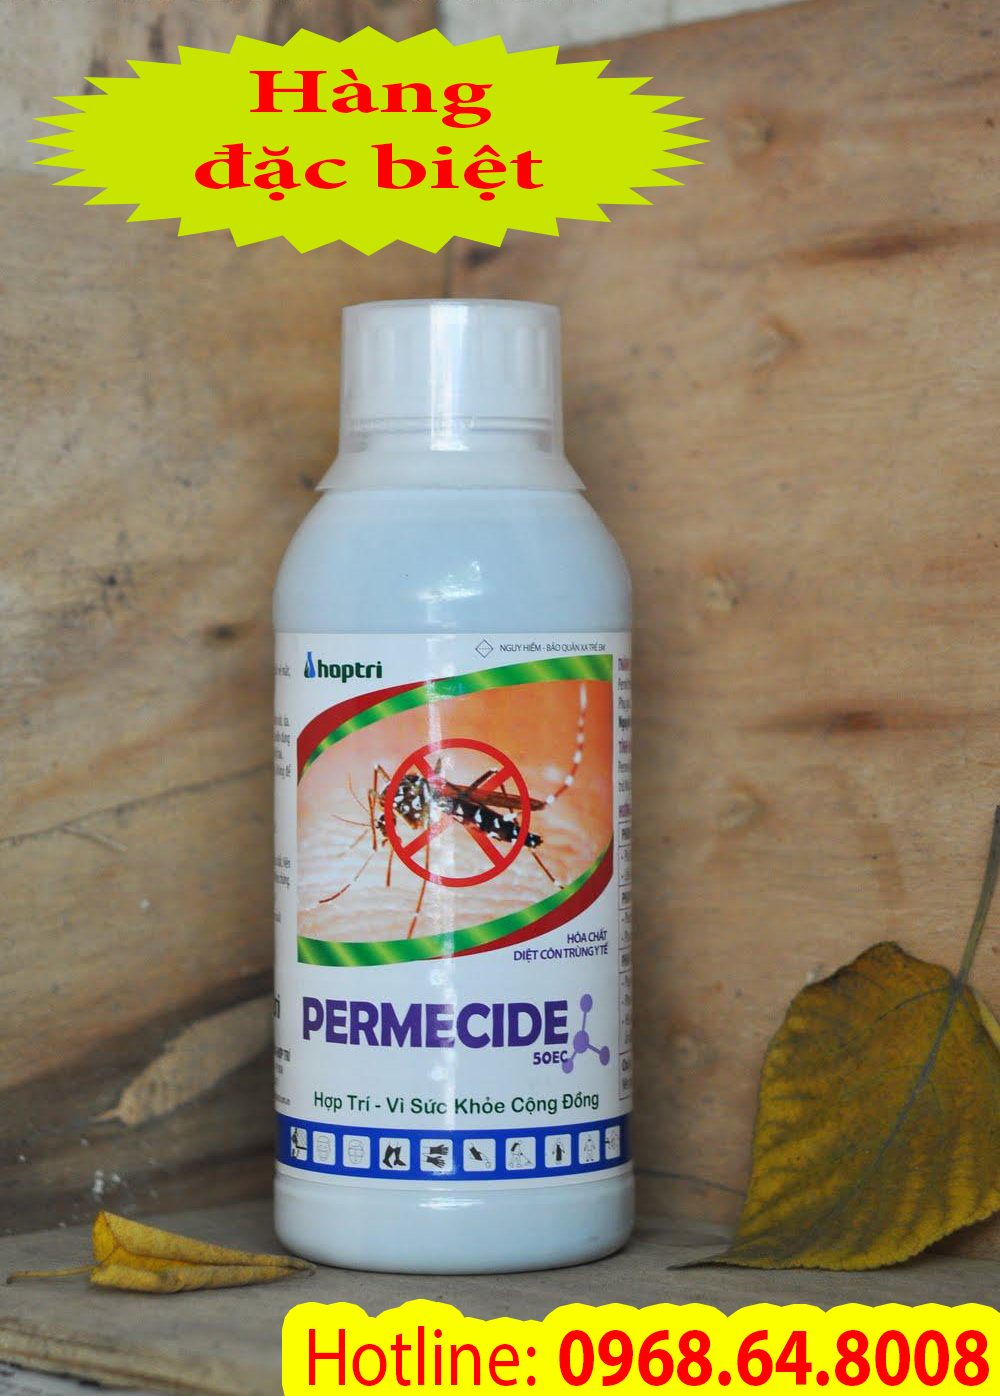 Permecide 50ec (1Lít) - (SX tại Ấn Độ) - Thuốc diệt côn trùng, muỗi, gián, ruồi, kiến, bọ chét...